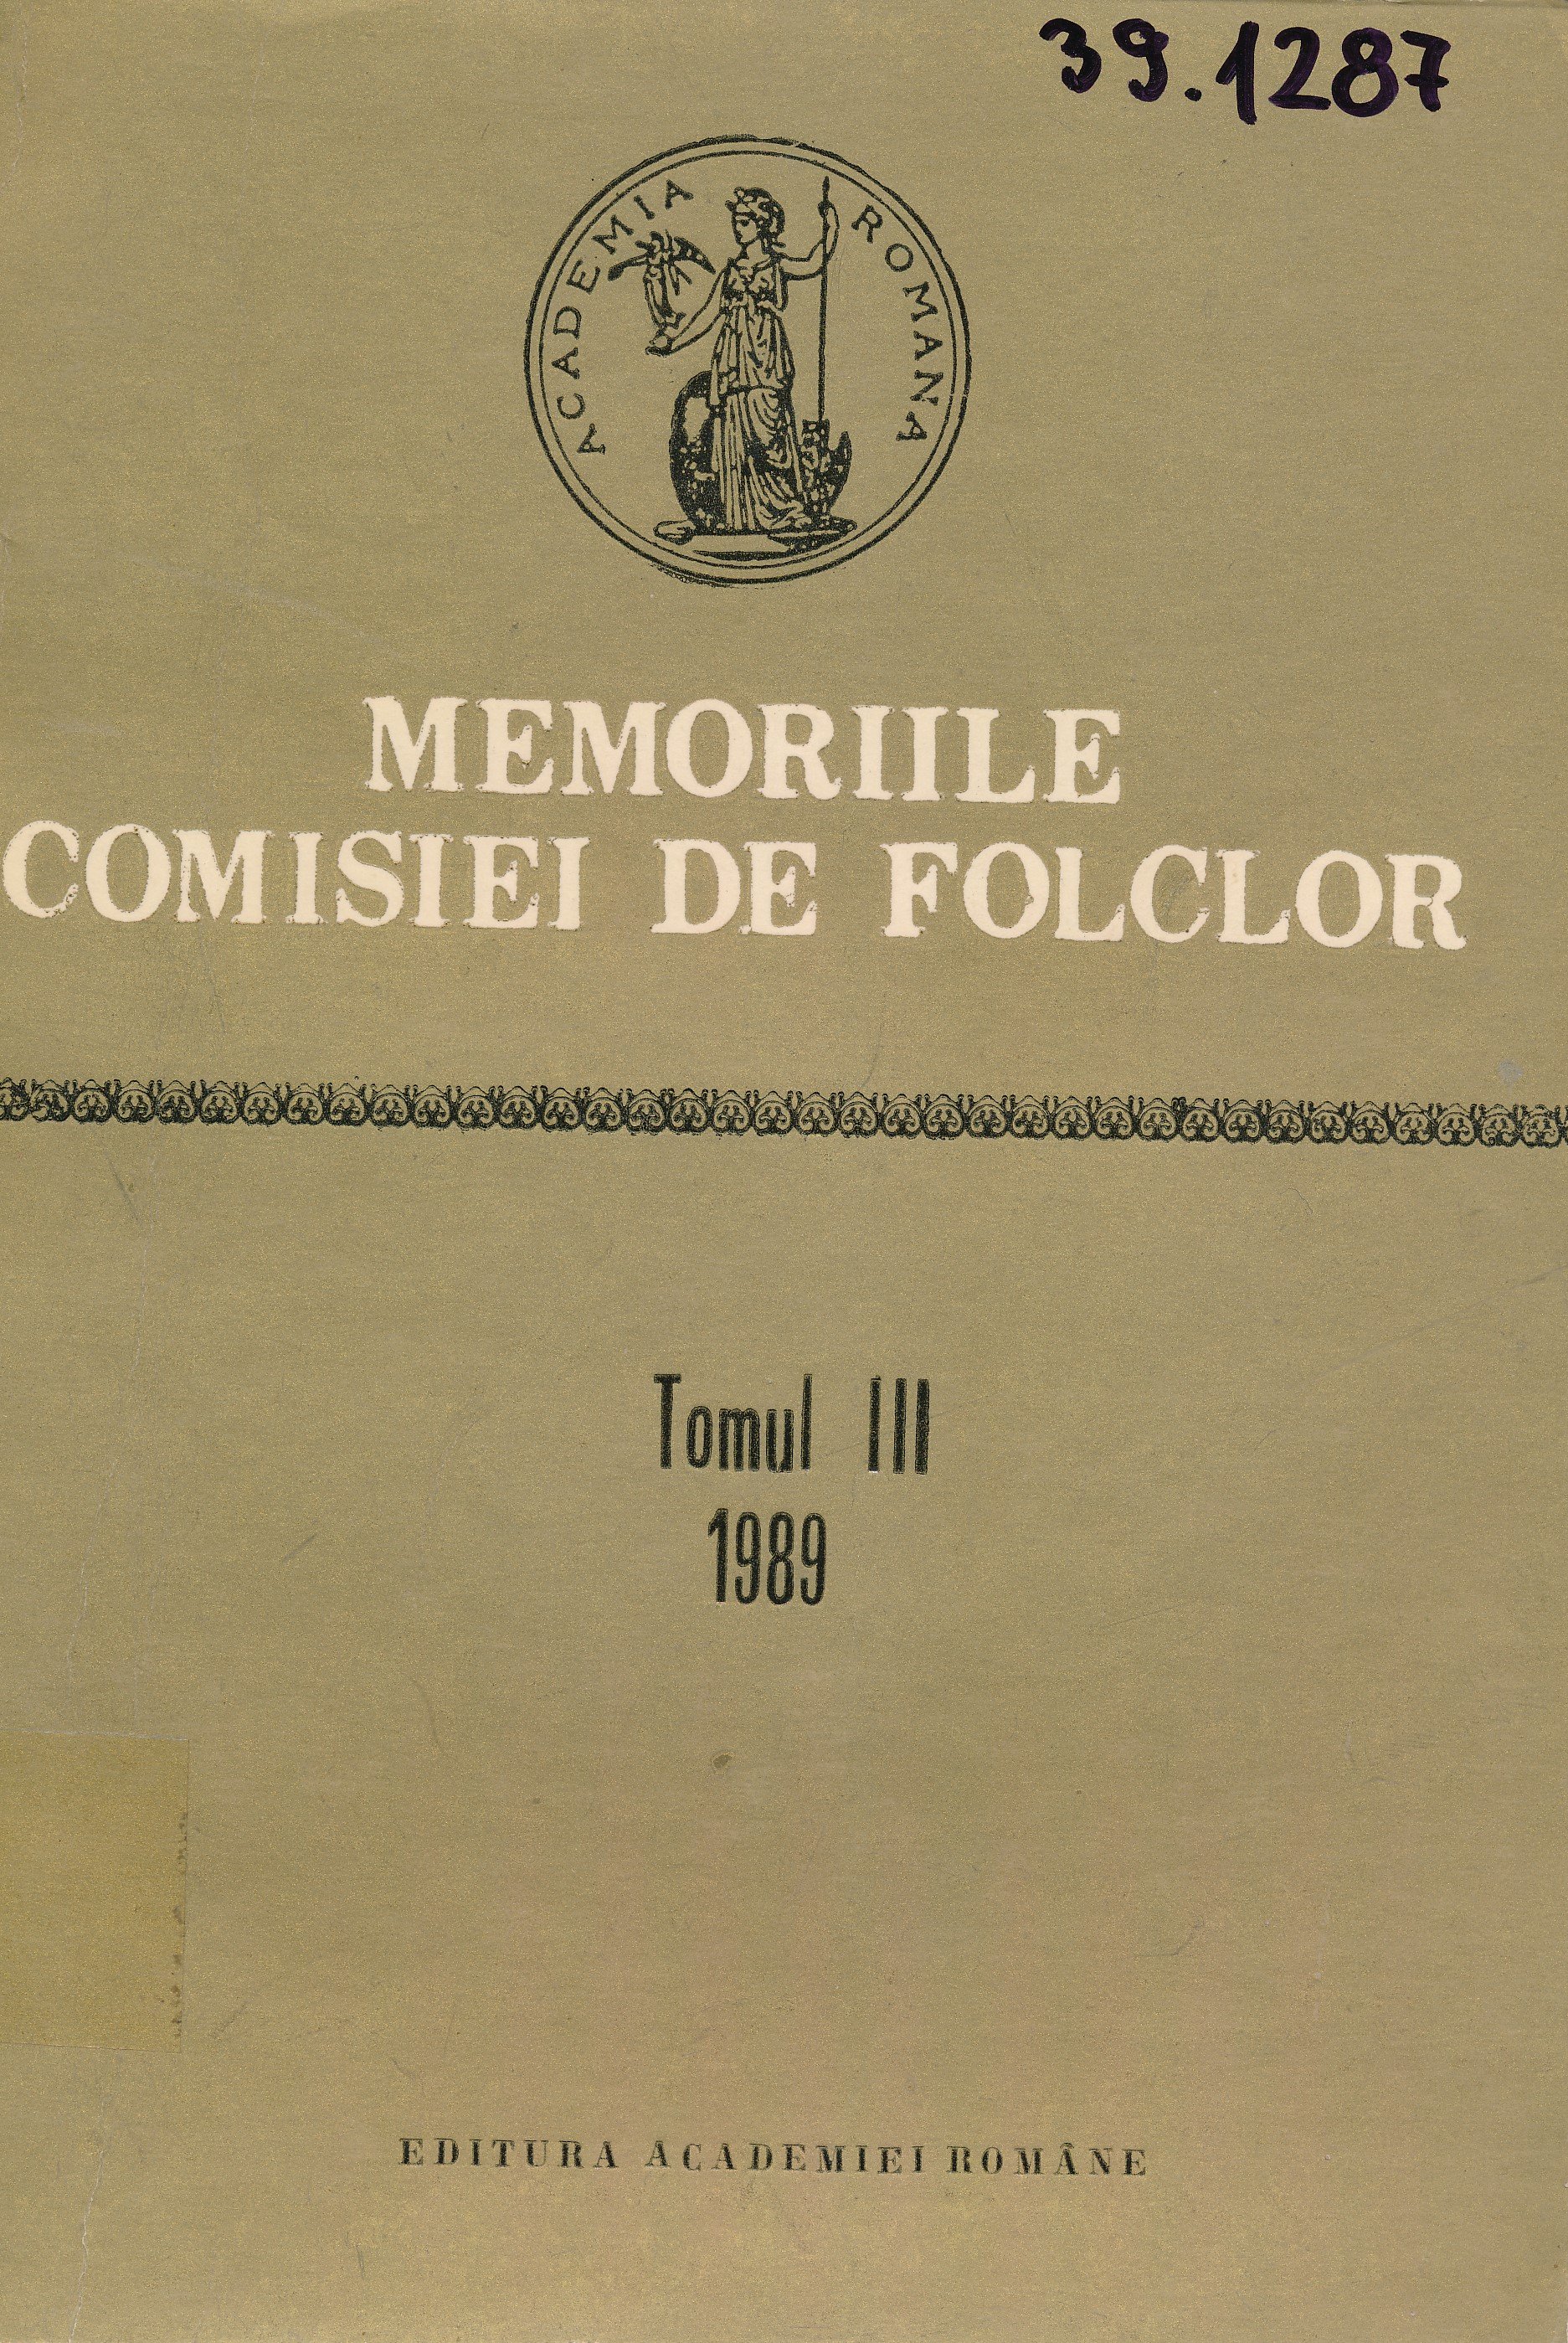 Memoriile comisiei de folclor (Erkel Ferenc Múzeum és Könyvtár, Gyula CC BY-NC-SA)